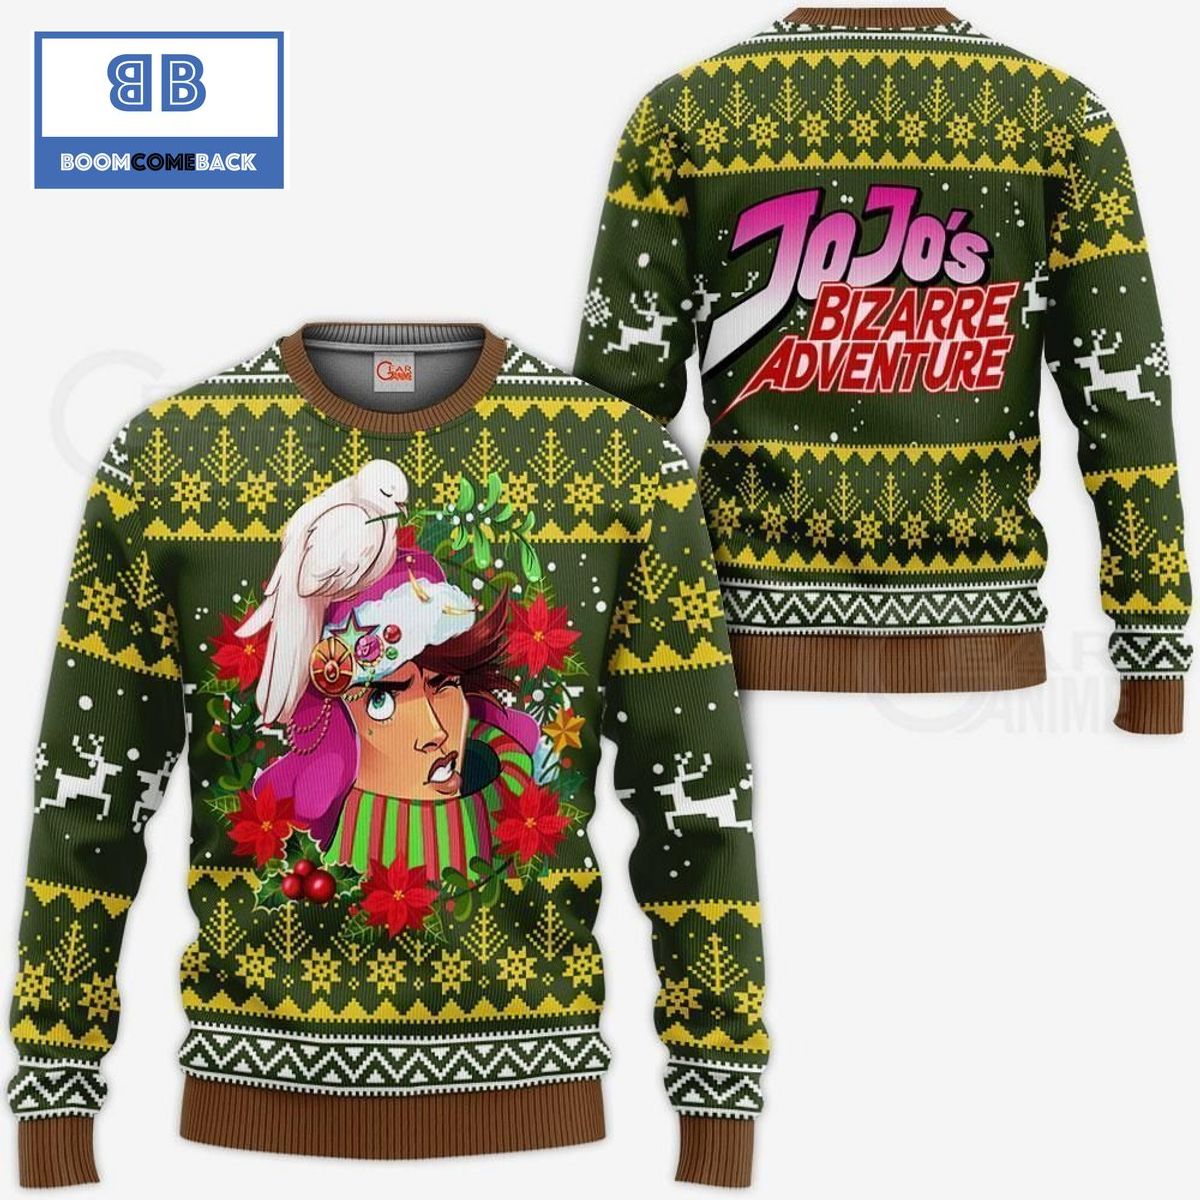 Joseph Joestar Satan Claus JoJo's Bizarre Adventure Anime Ugly Christmas Sweater